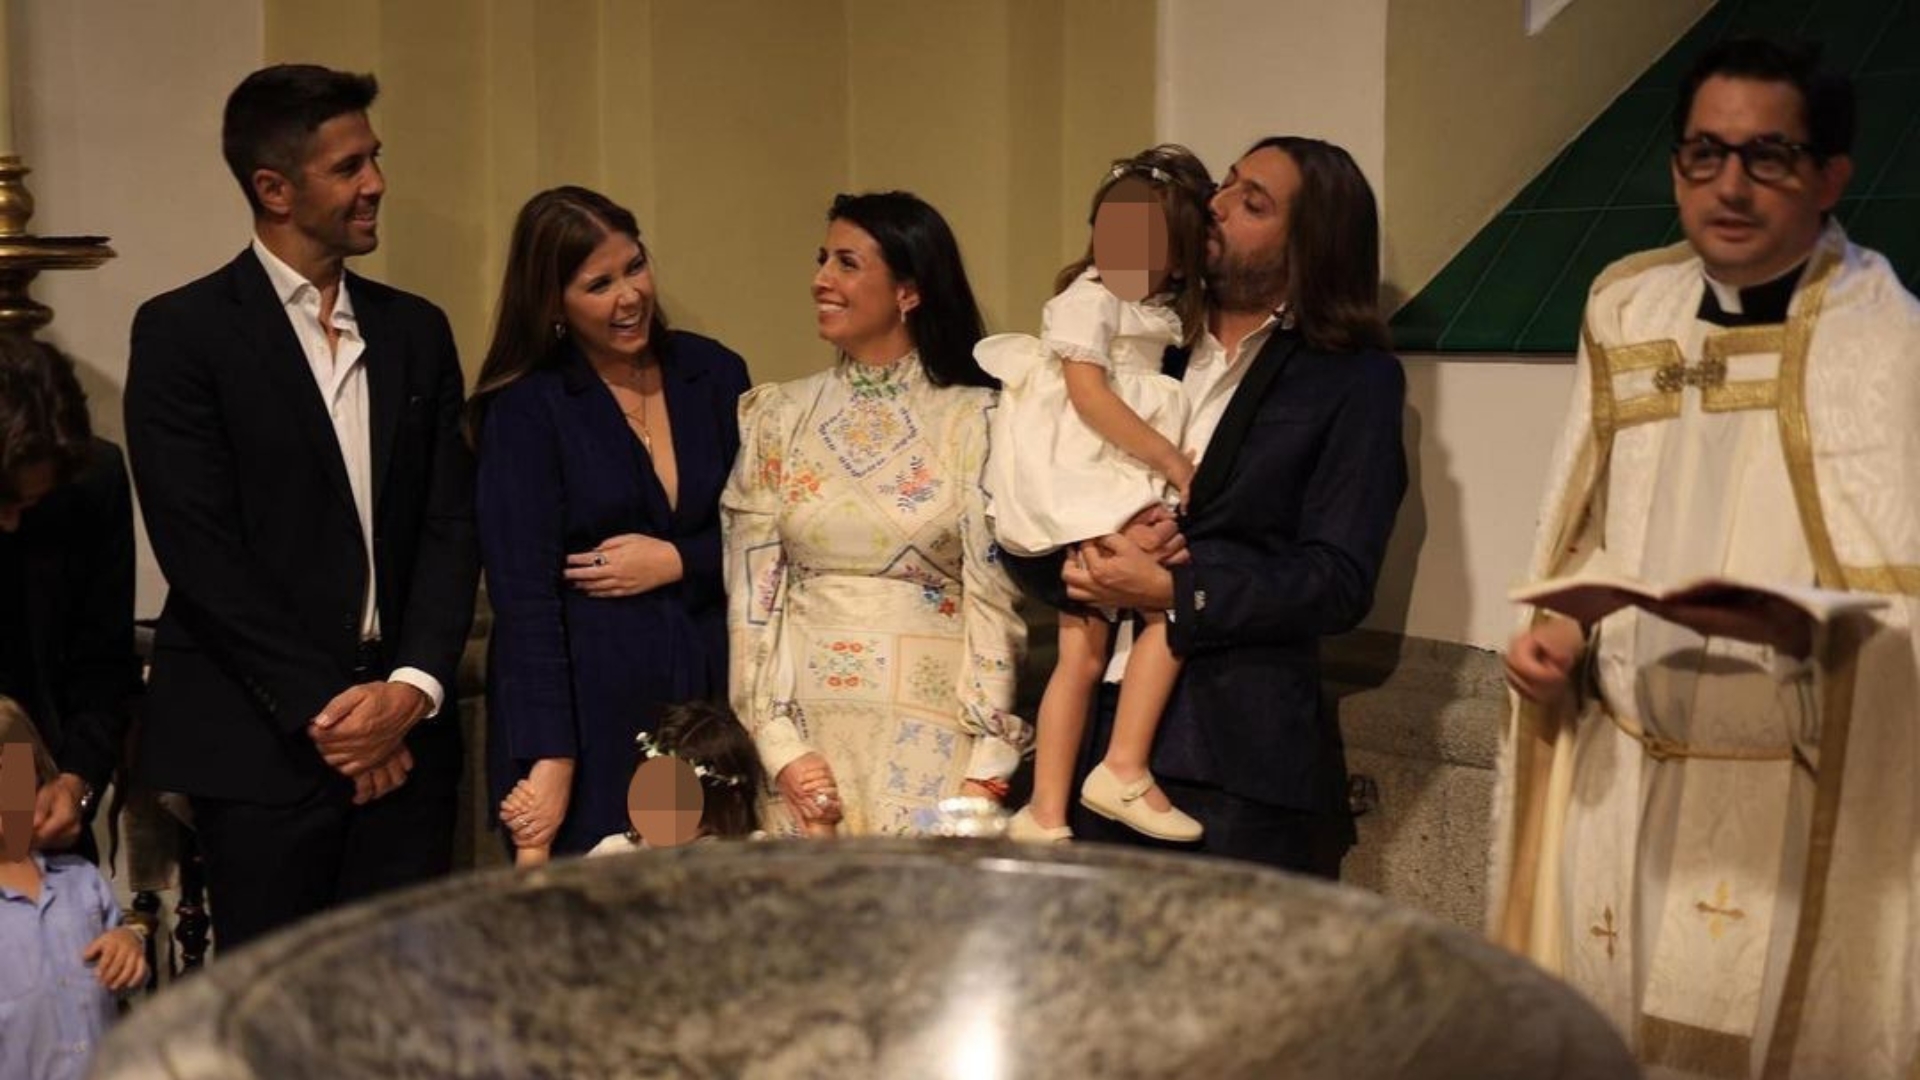 Fernando Verdasco acude al bautizo de sus sobrinas que acaba en fiesta flamenca